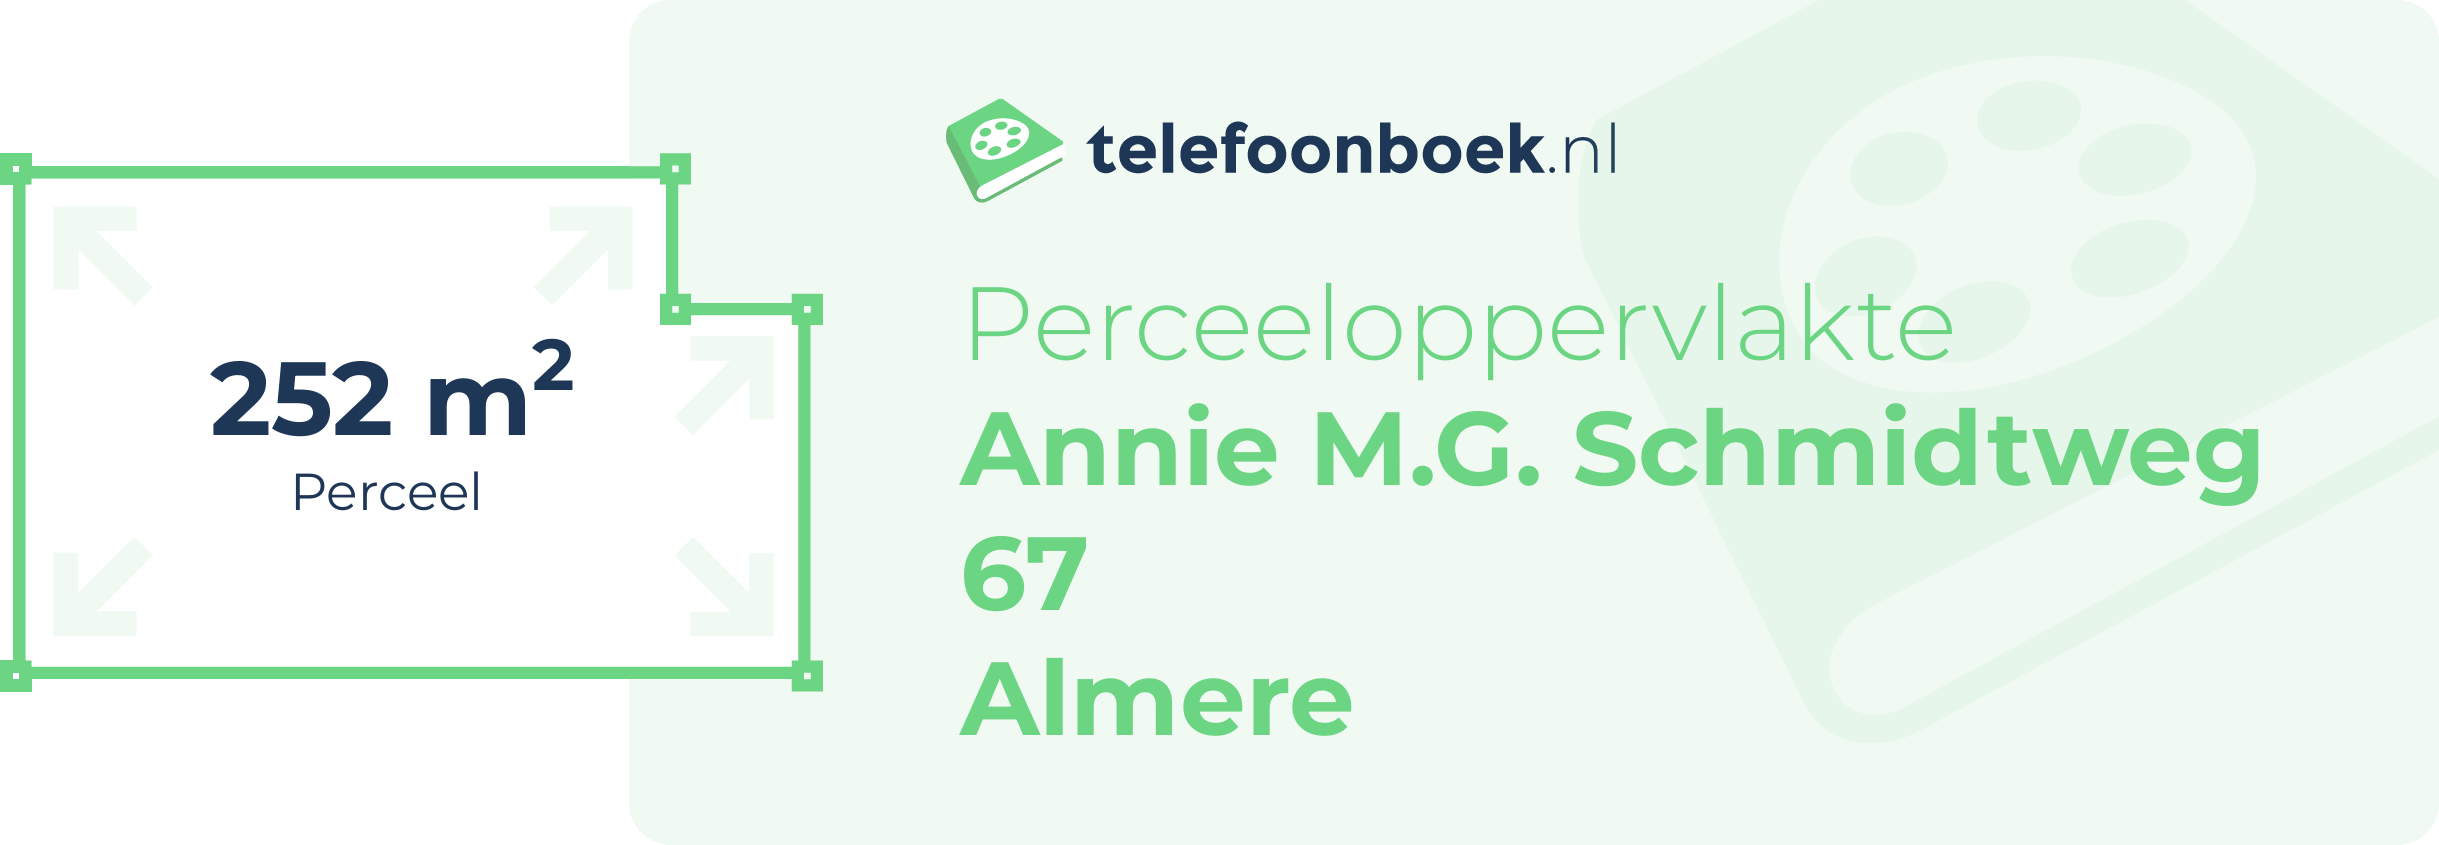 Perceeloppervlakte Annie M.G. Schmidtweg 67 Almere